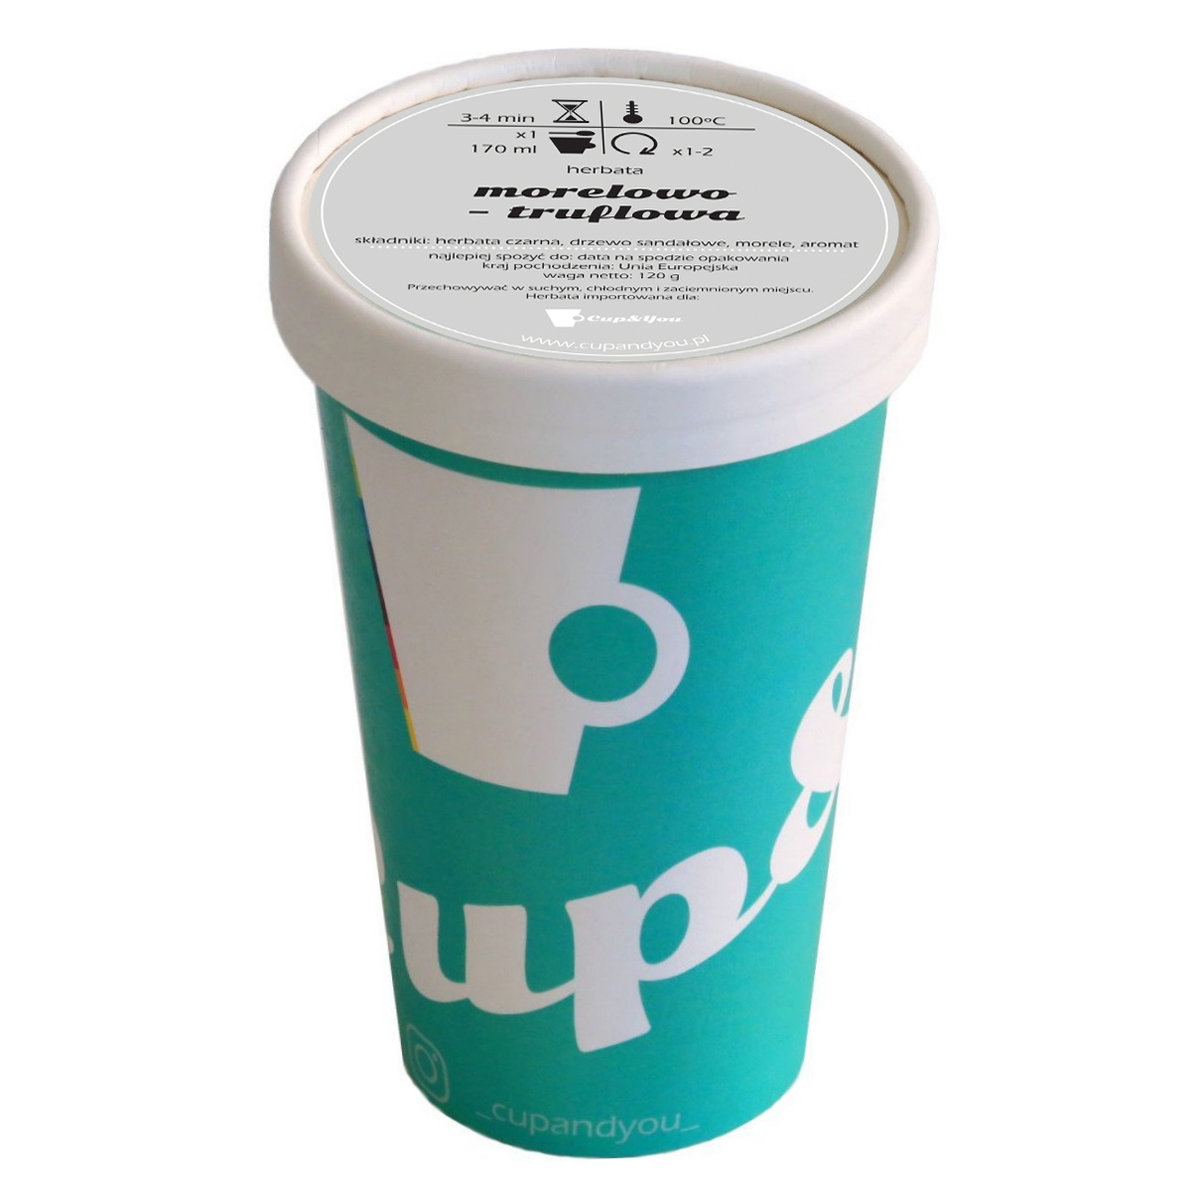 Herbata czarna smakowa CUP&YOU, morelowo-truflowa w EKO KUBKU, 120 g